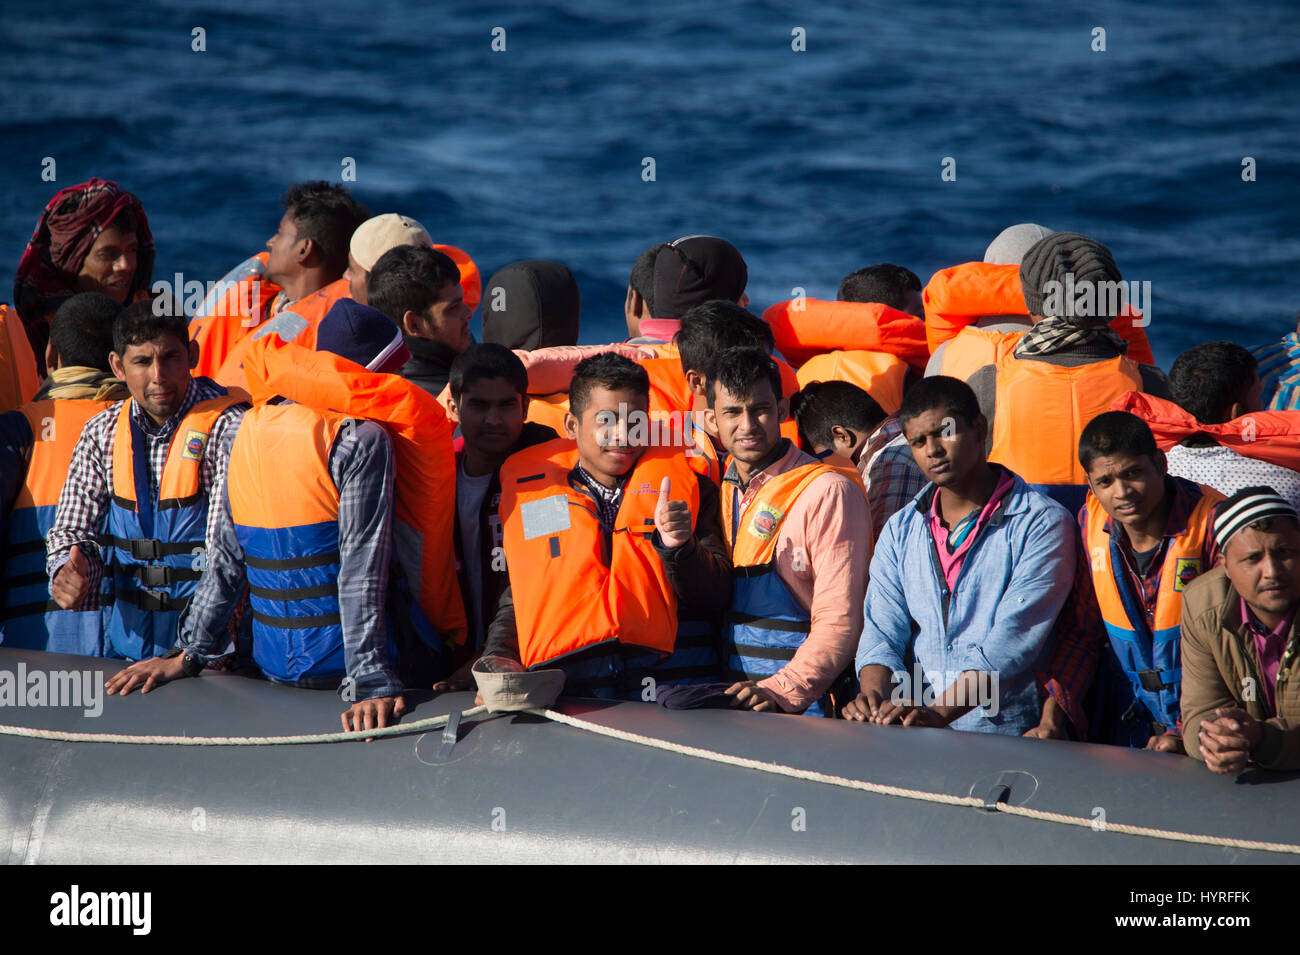 Ein nicht seetüchtigen Rubberboat mit rund 150 Menschen an Bord Offshore-Libyen versucht, das Mittelmeer nach Europa zu gelangen. Wegen des Zustands, whi Stockfoto